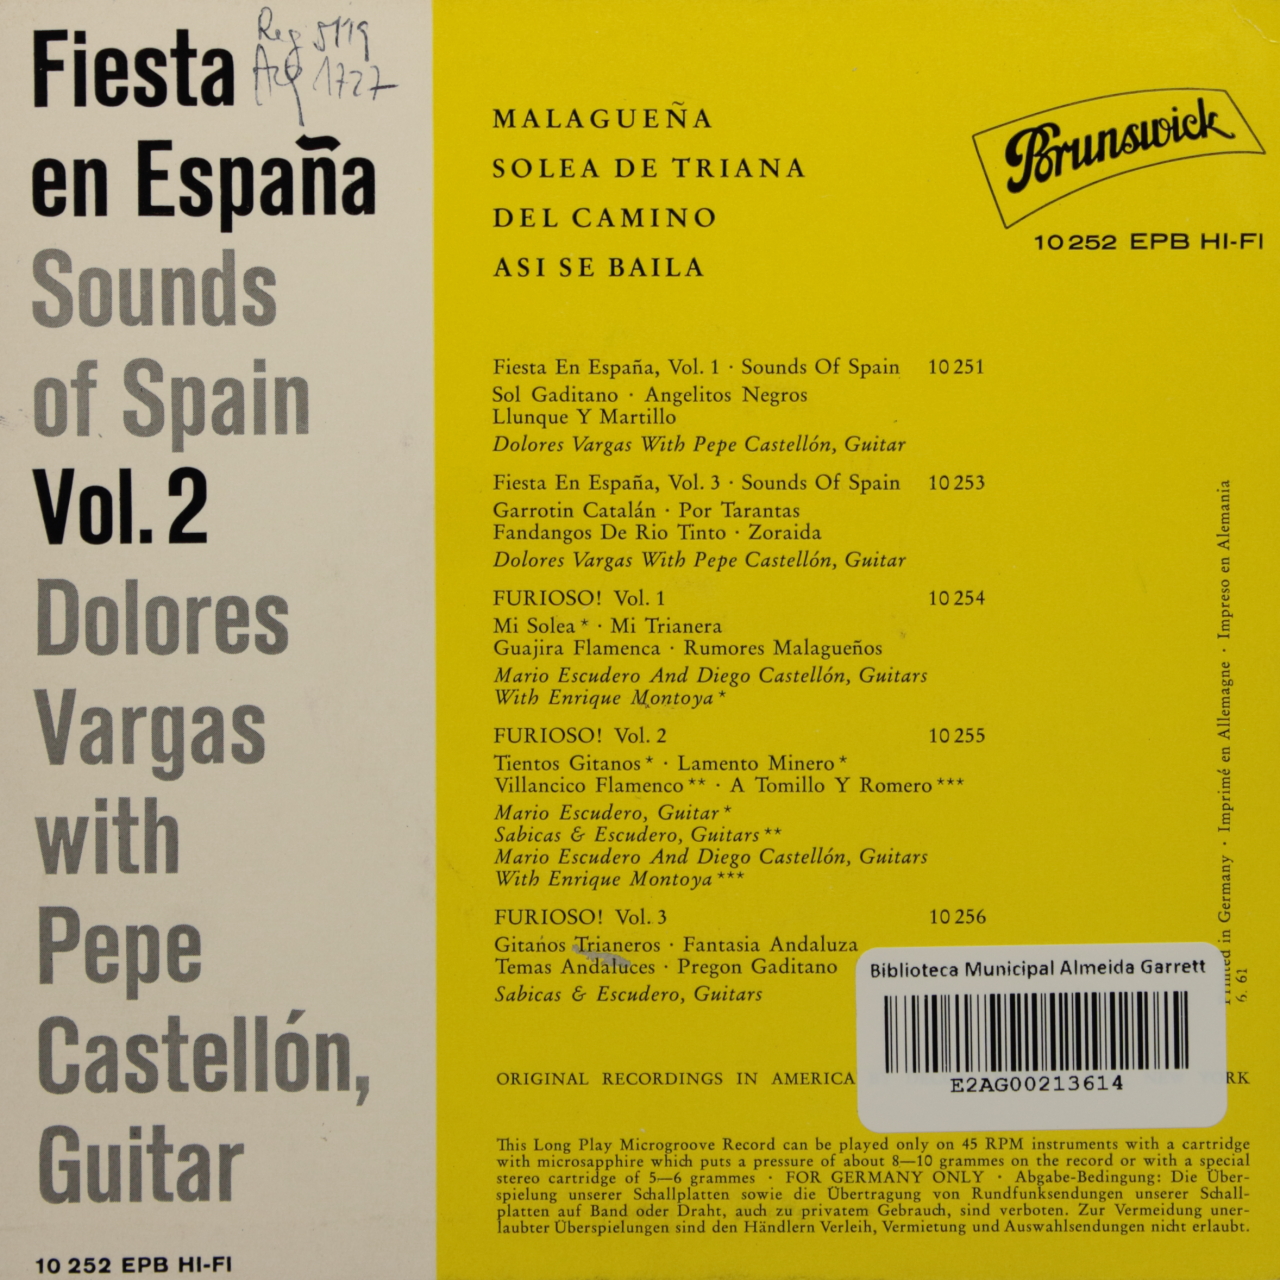 Fiesta en España Vol. 2